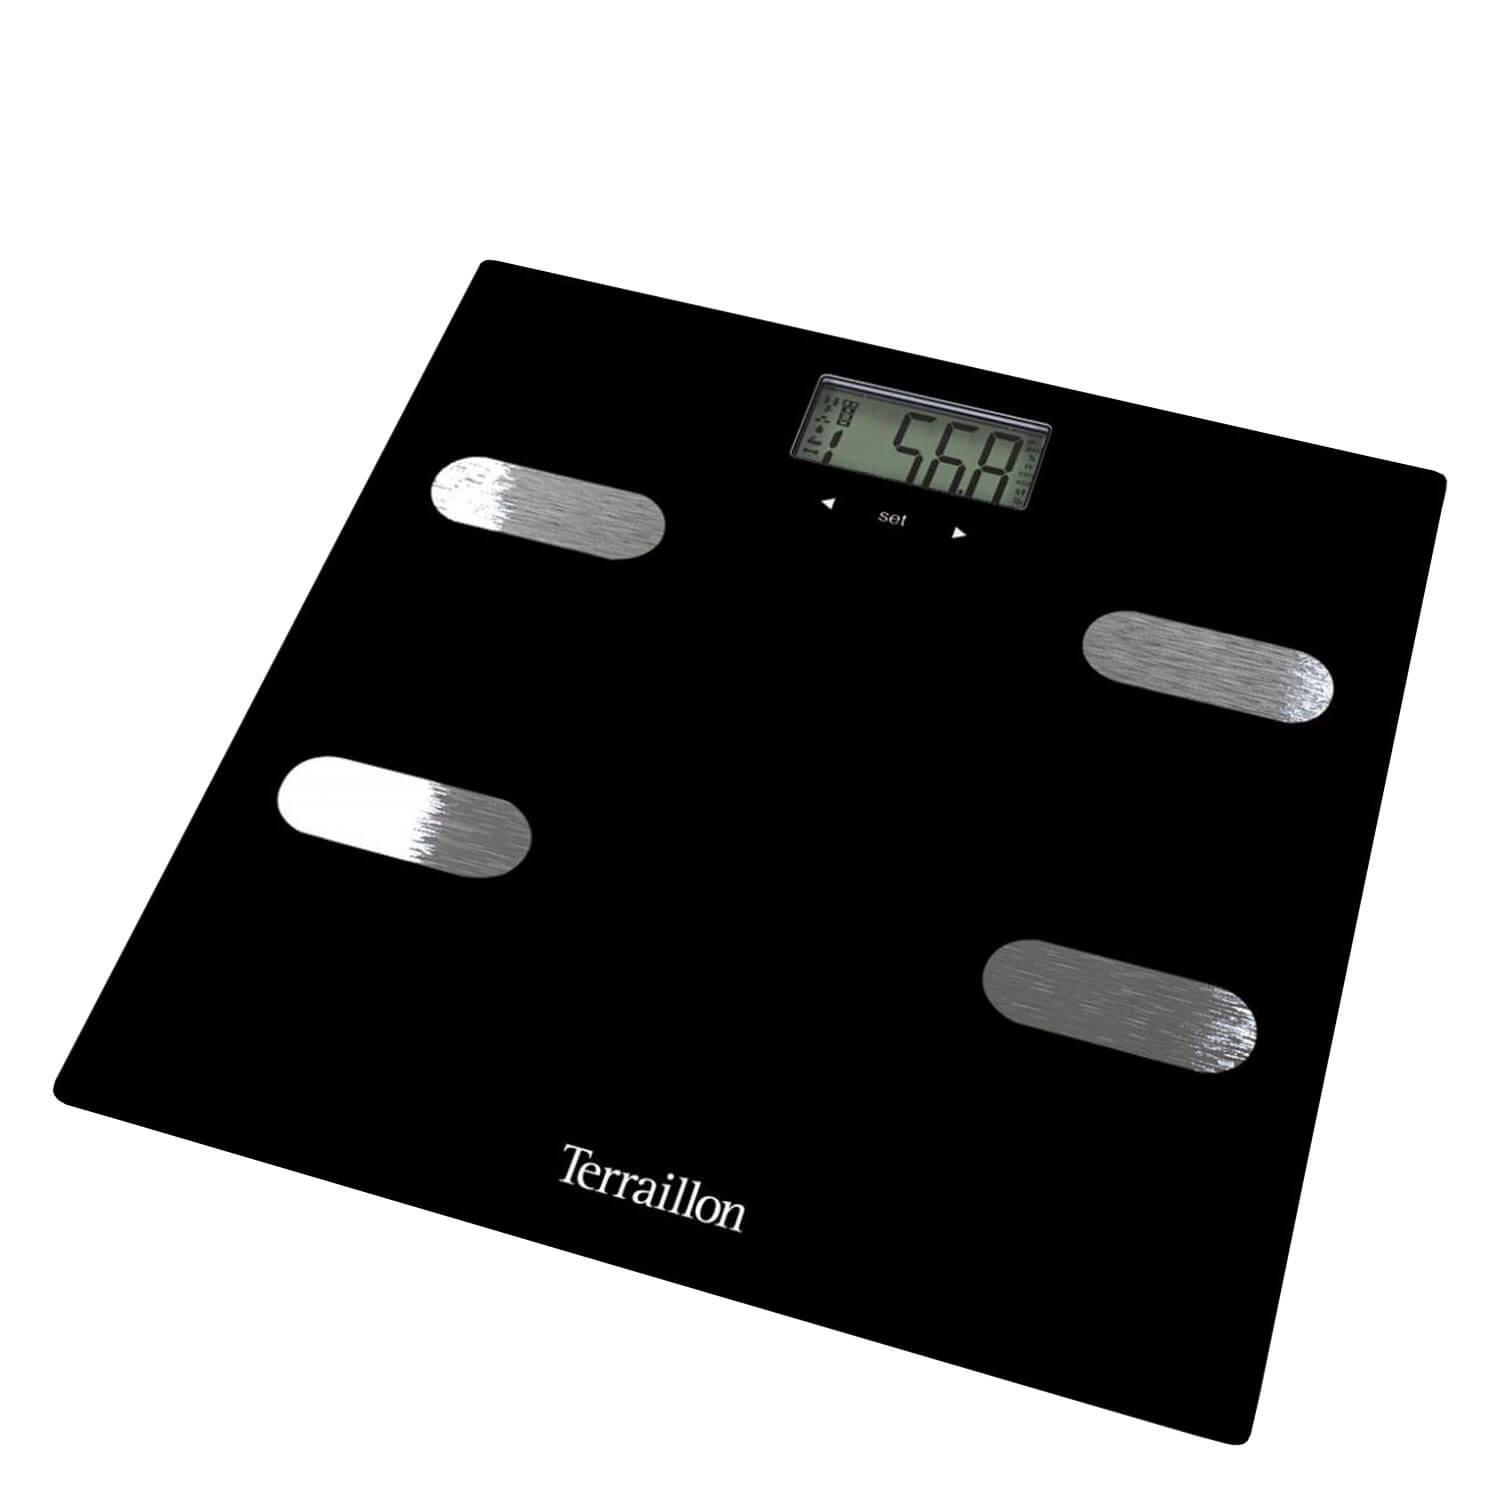 Terraillon - Fitness Body Composition Scale Black